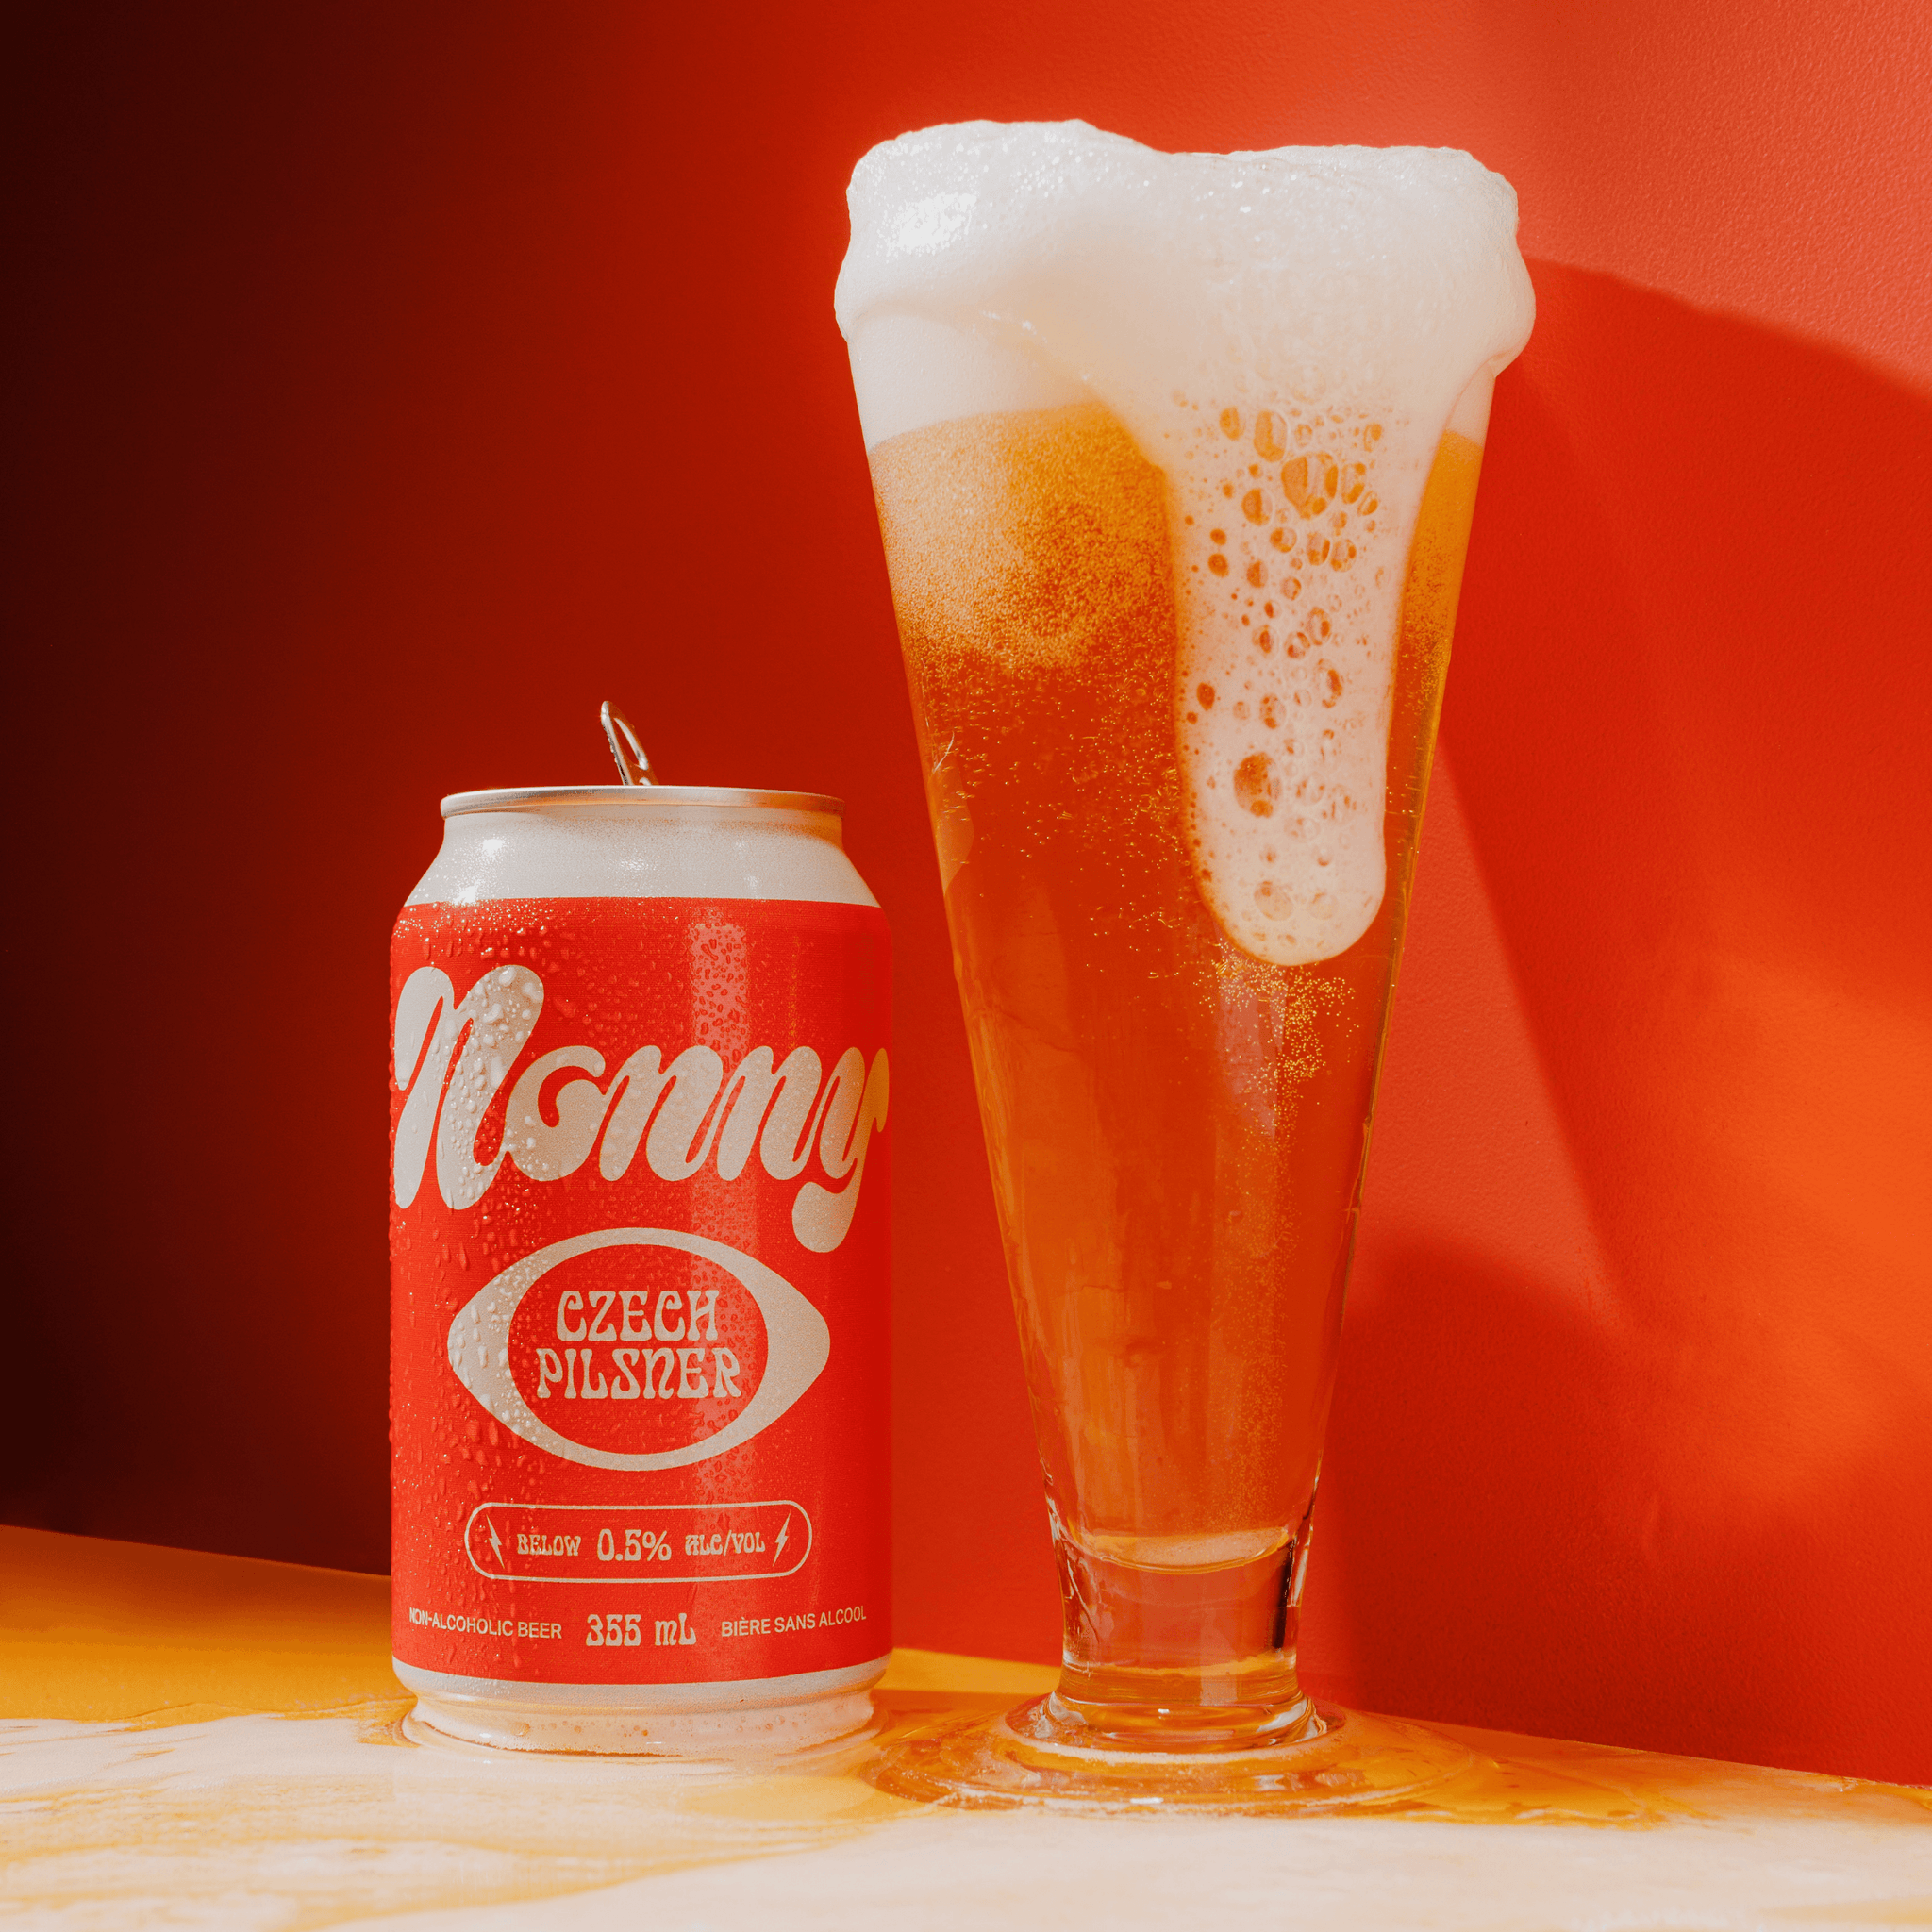 NONNY CZECH PILSNER - Nonny Beer